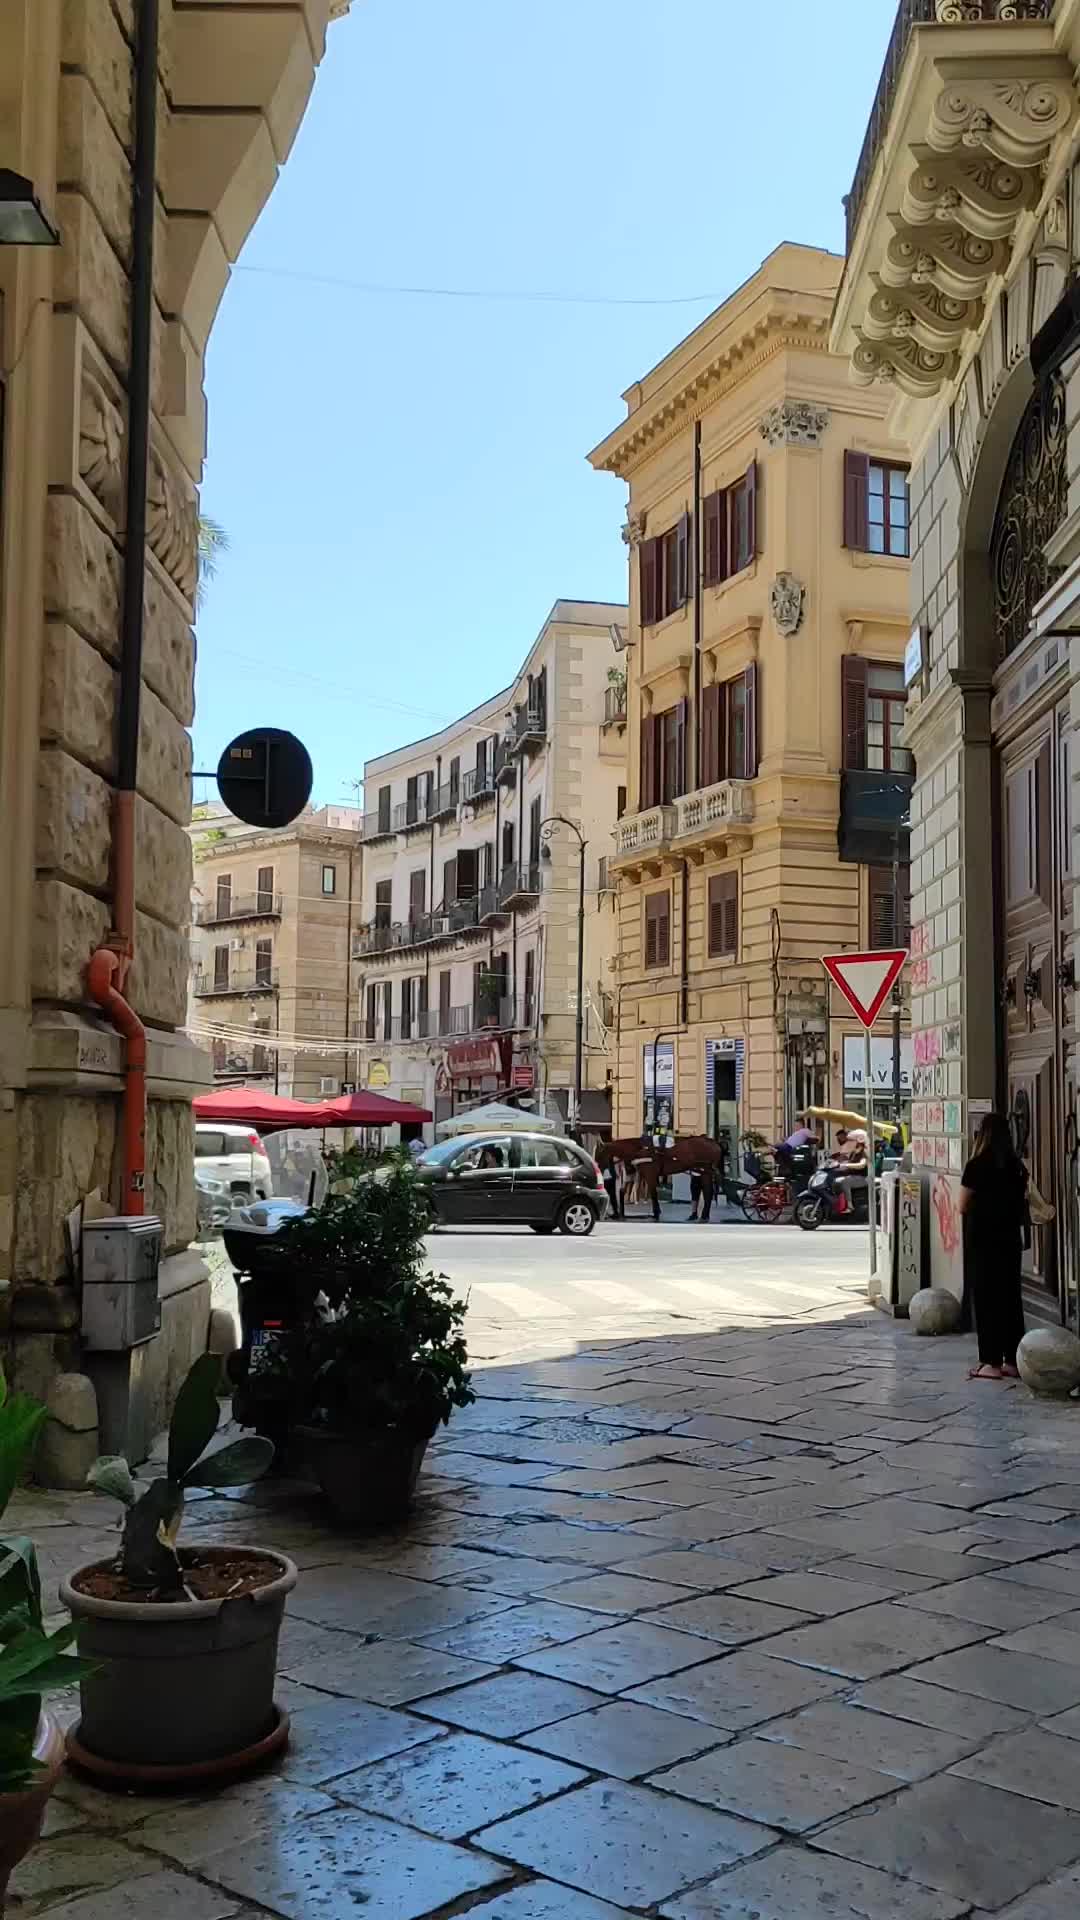 Explore Piazza San Domenico in Palermo, Italy